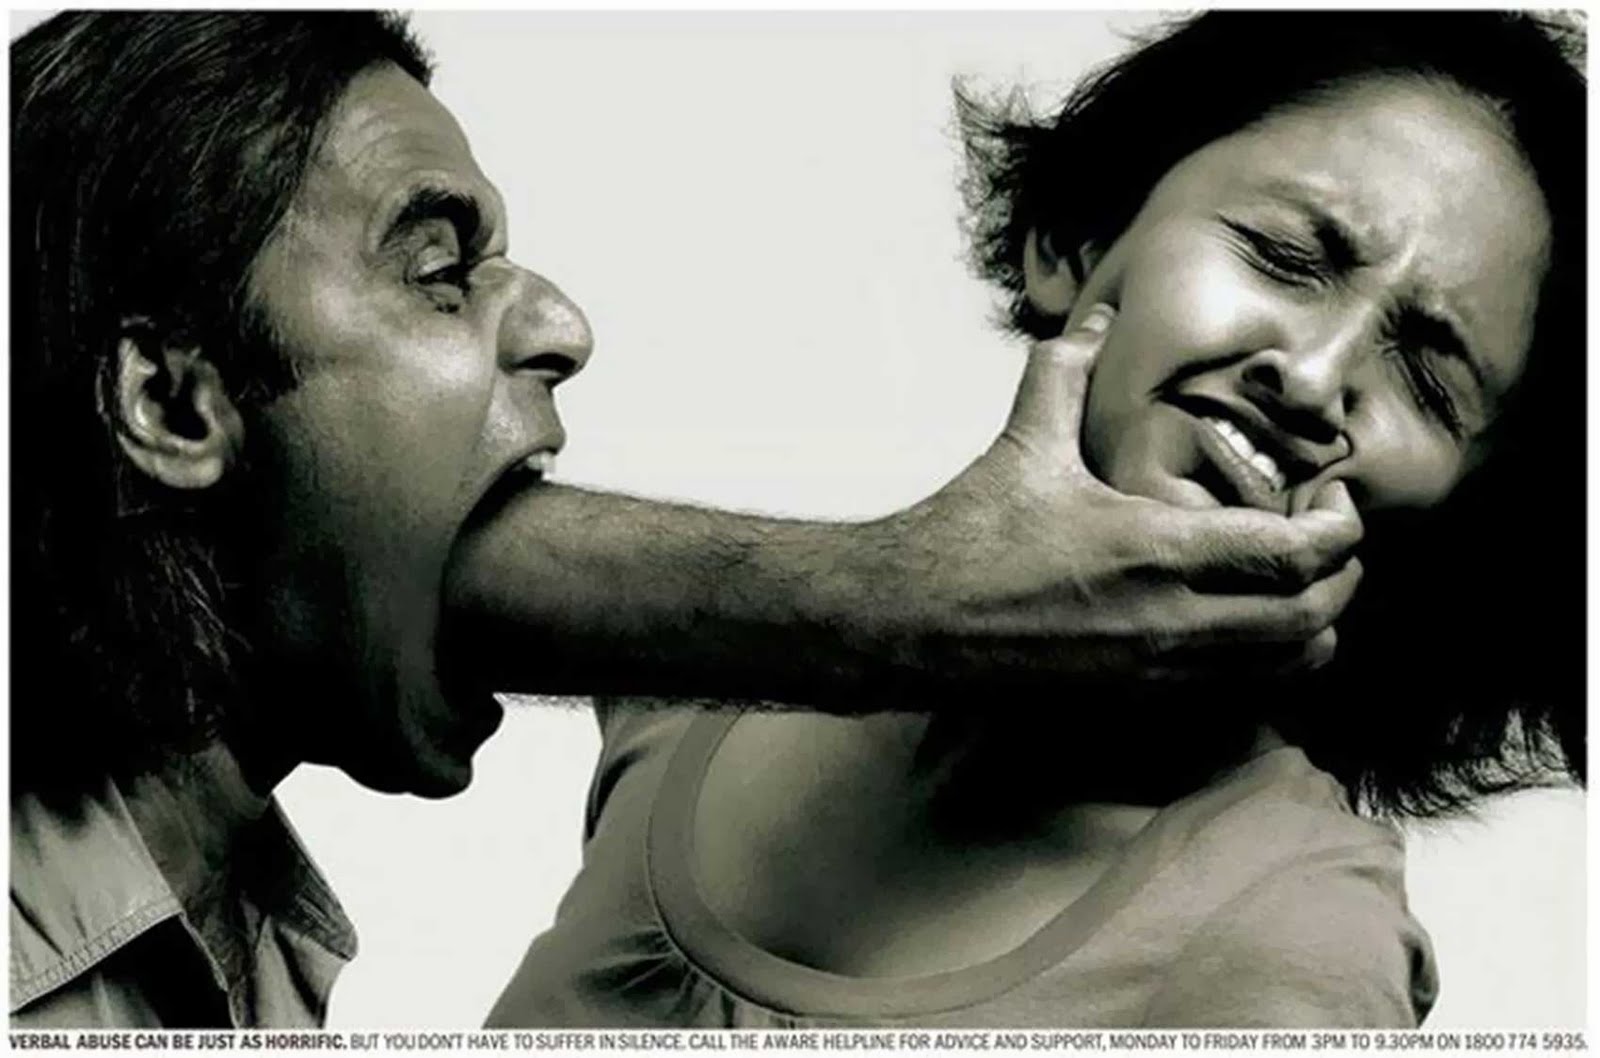 domestic violence1